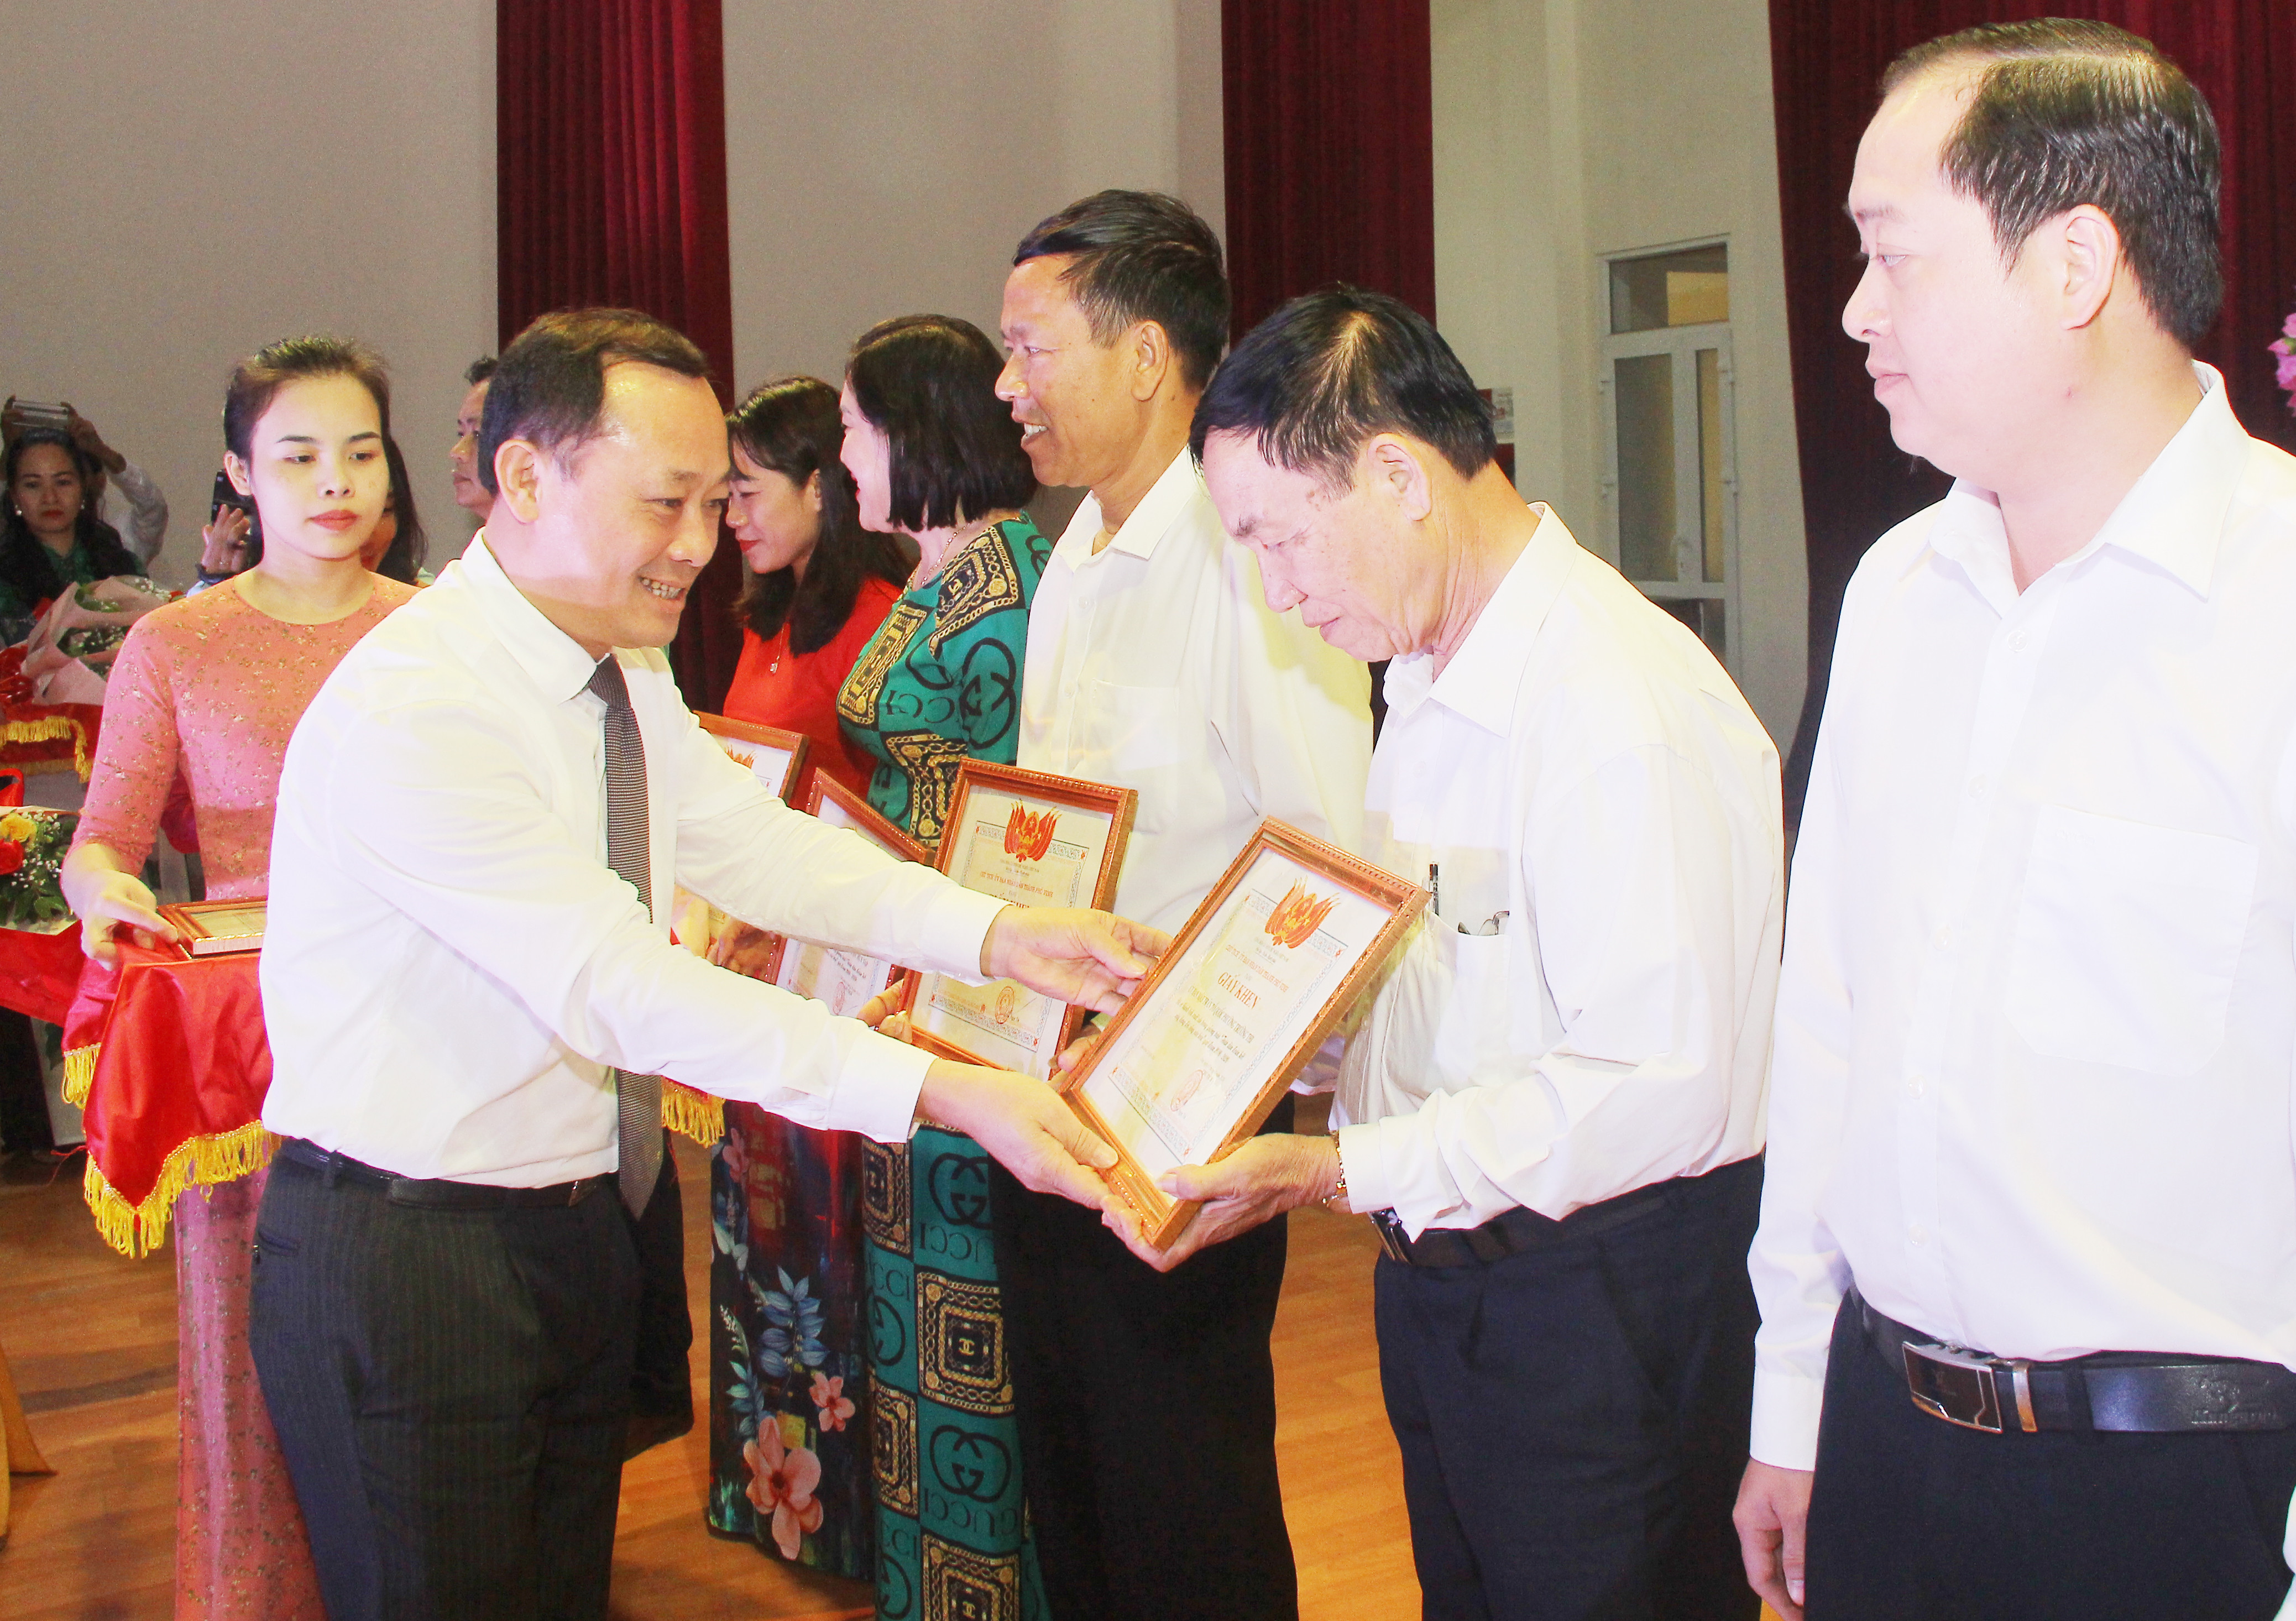 Đồng chí Phan Đức Đồng - Ủy viên Ban Thường vụ Tỉnh ủy, Bí thư Thành ủy trao giấy khen cho các tập thể có thành tích xuất sắc trong phong trào. Ảnh: Mai Hoa